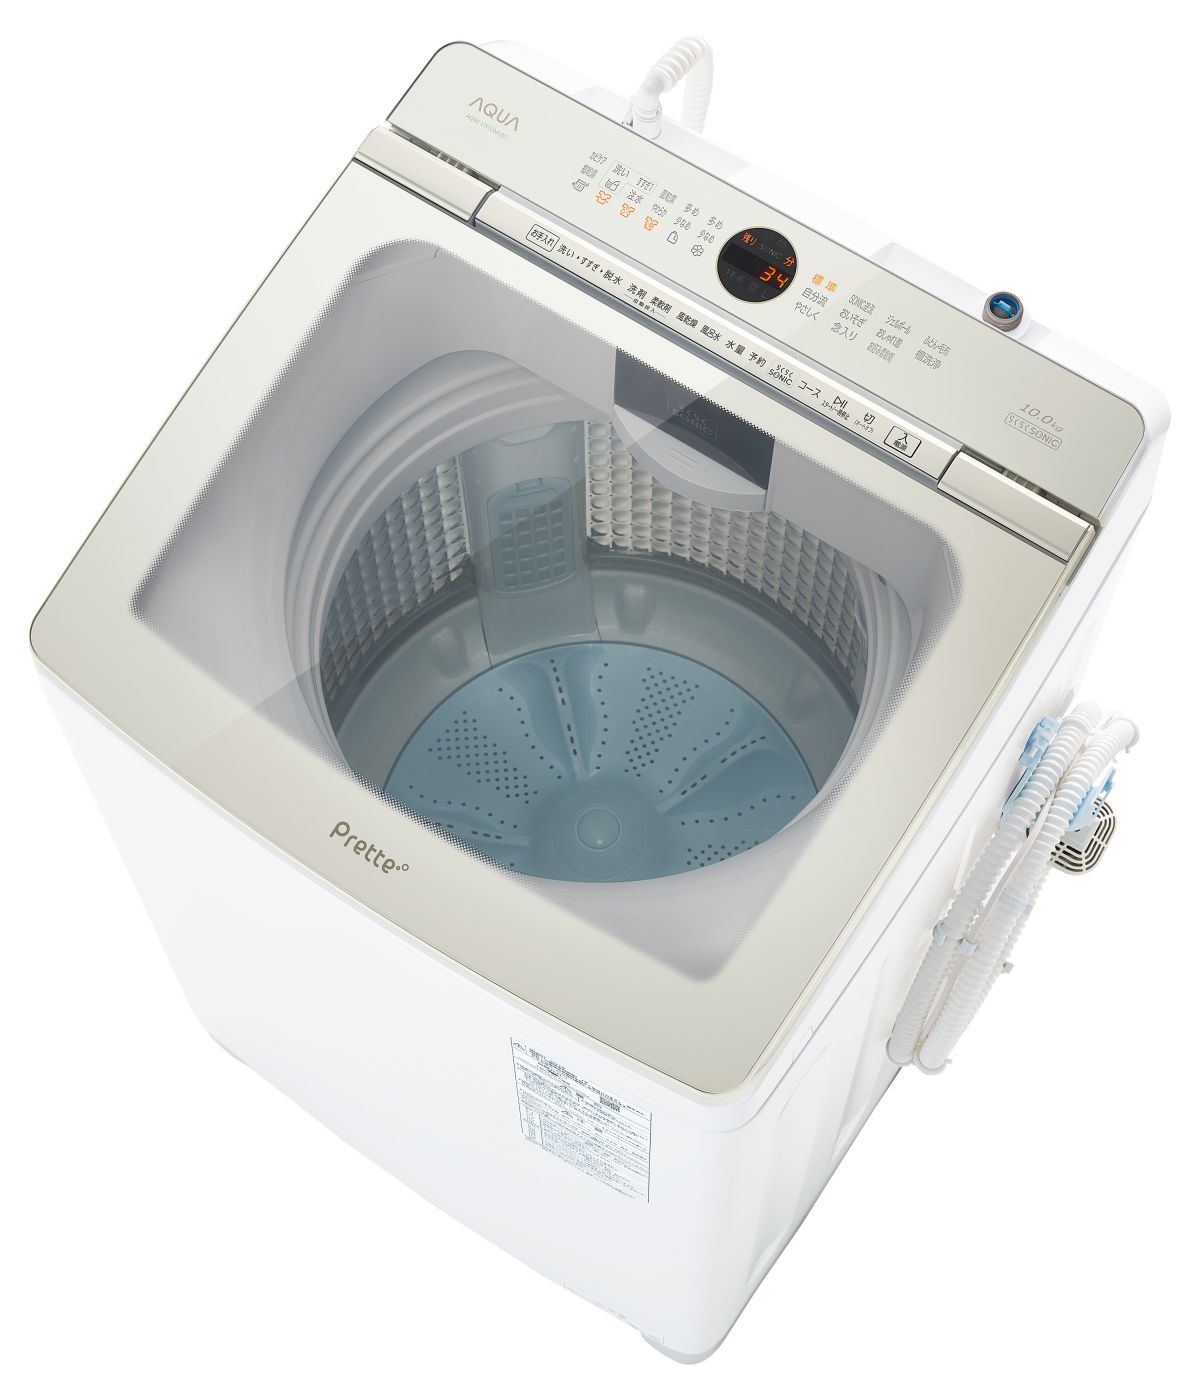 アクア 液体洗剤 柔軟剤の自動投入や超音波部分洗浄を備えた洗濯機 Prette マイナビニュース